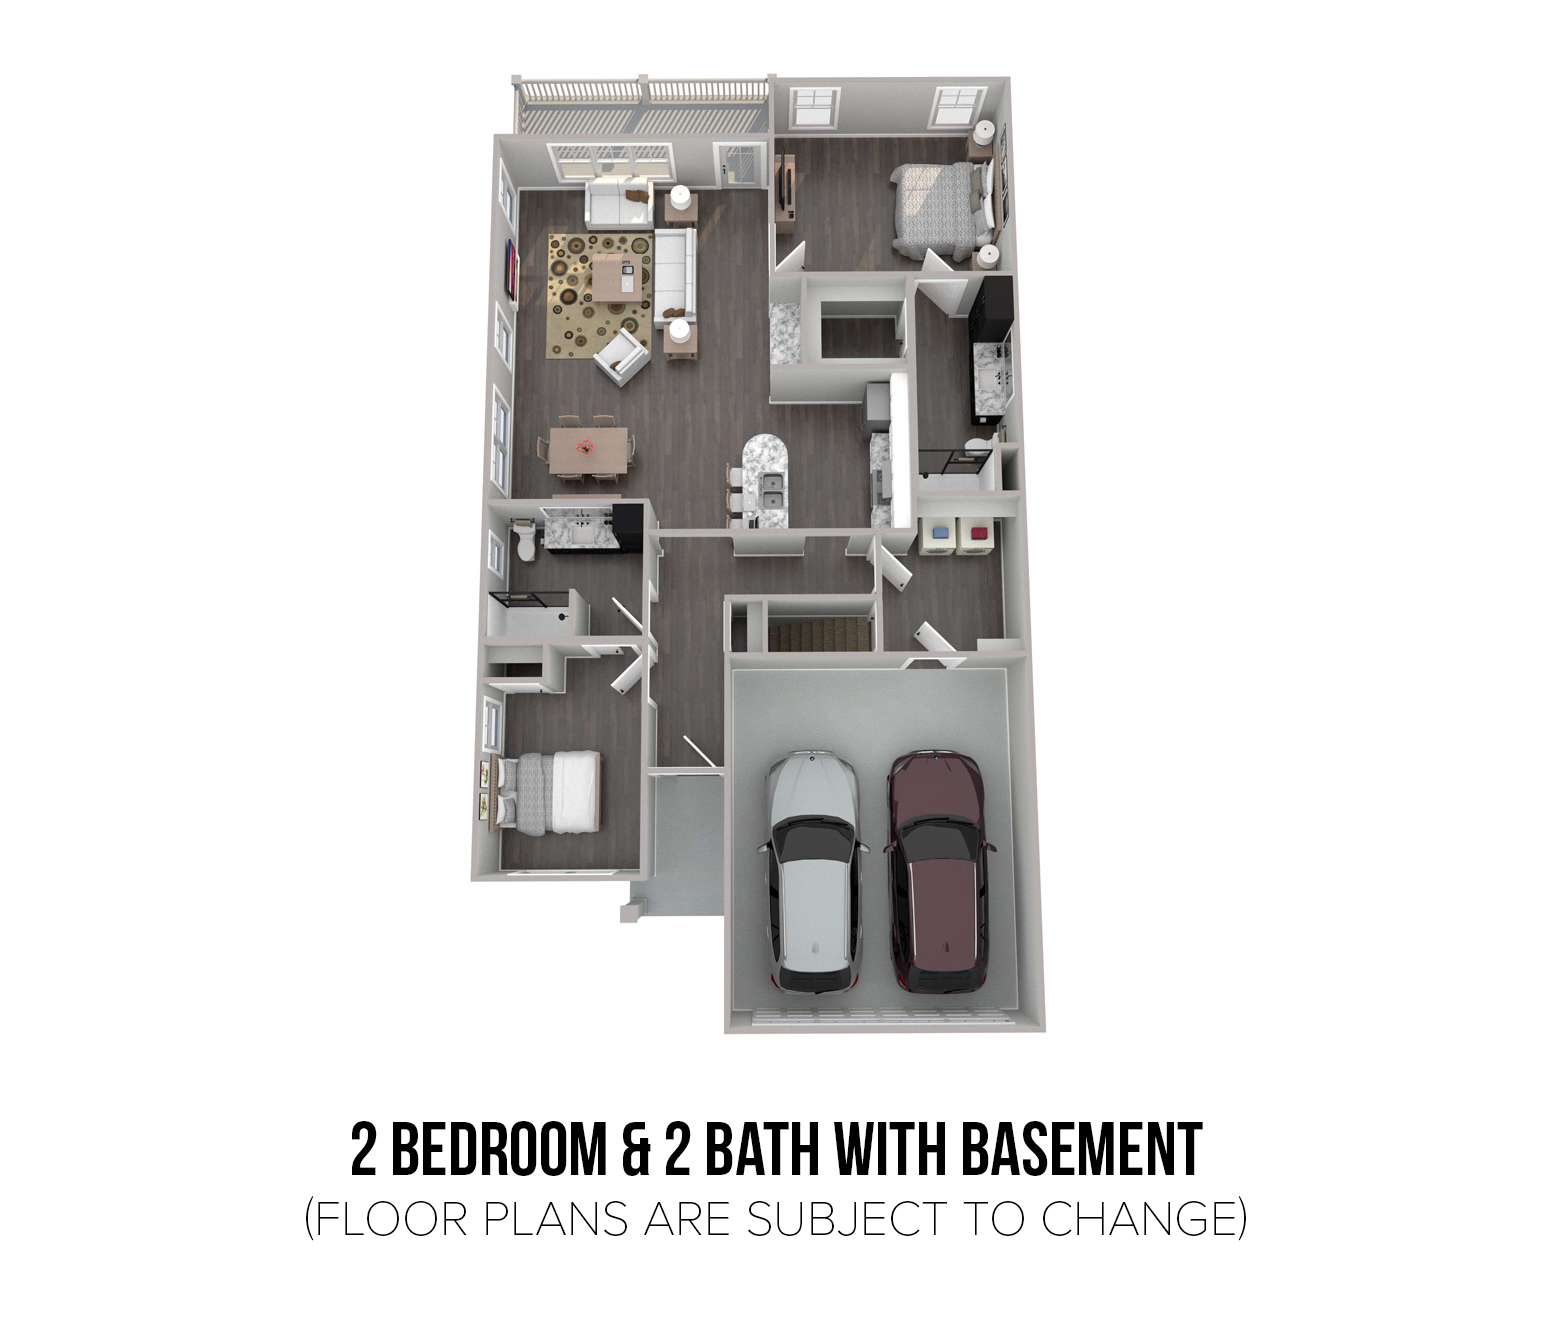 Floorplan - 2 Bedroom & 2 Bath With Basement image